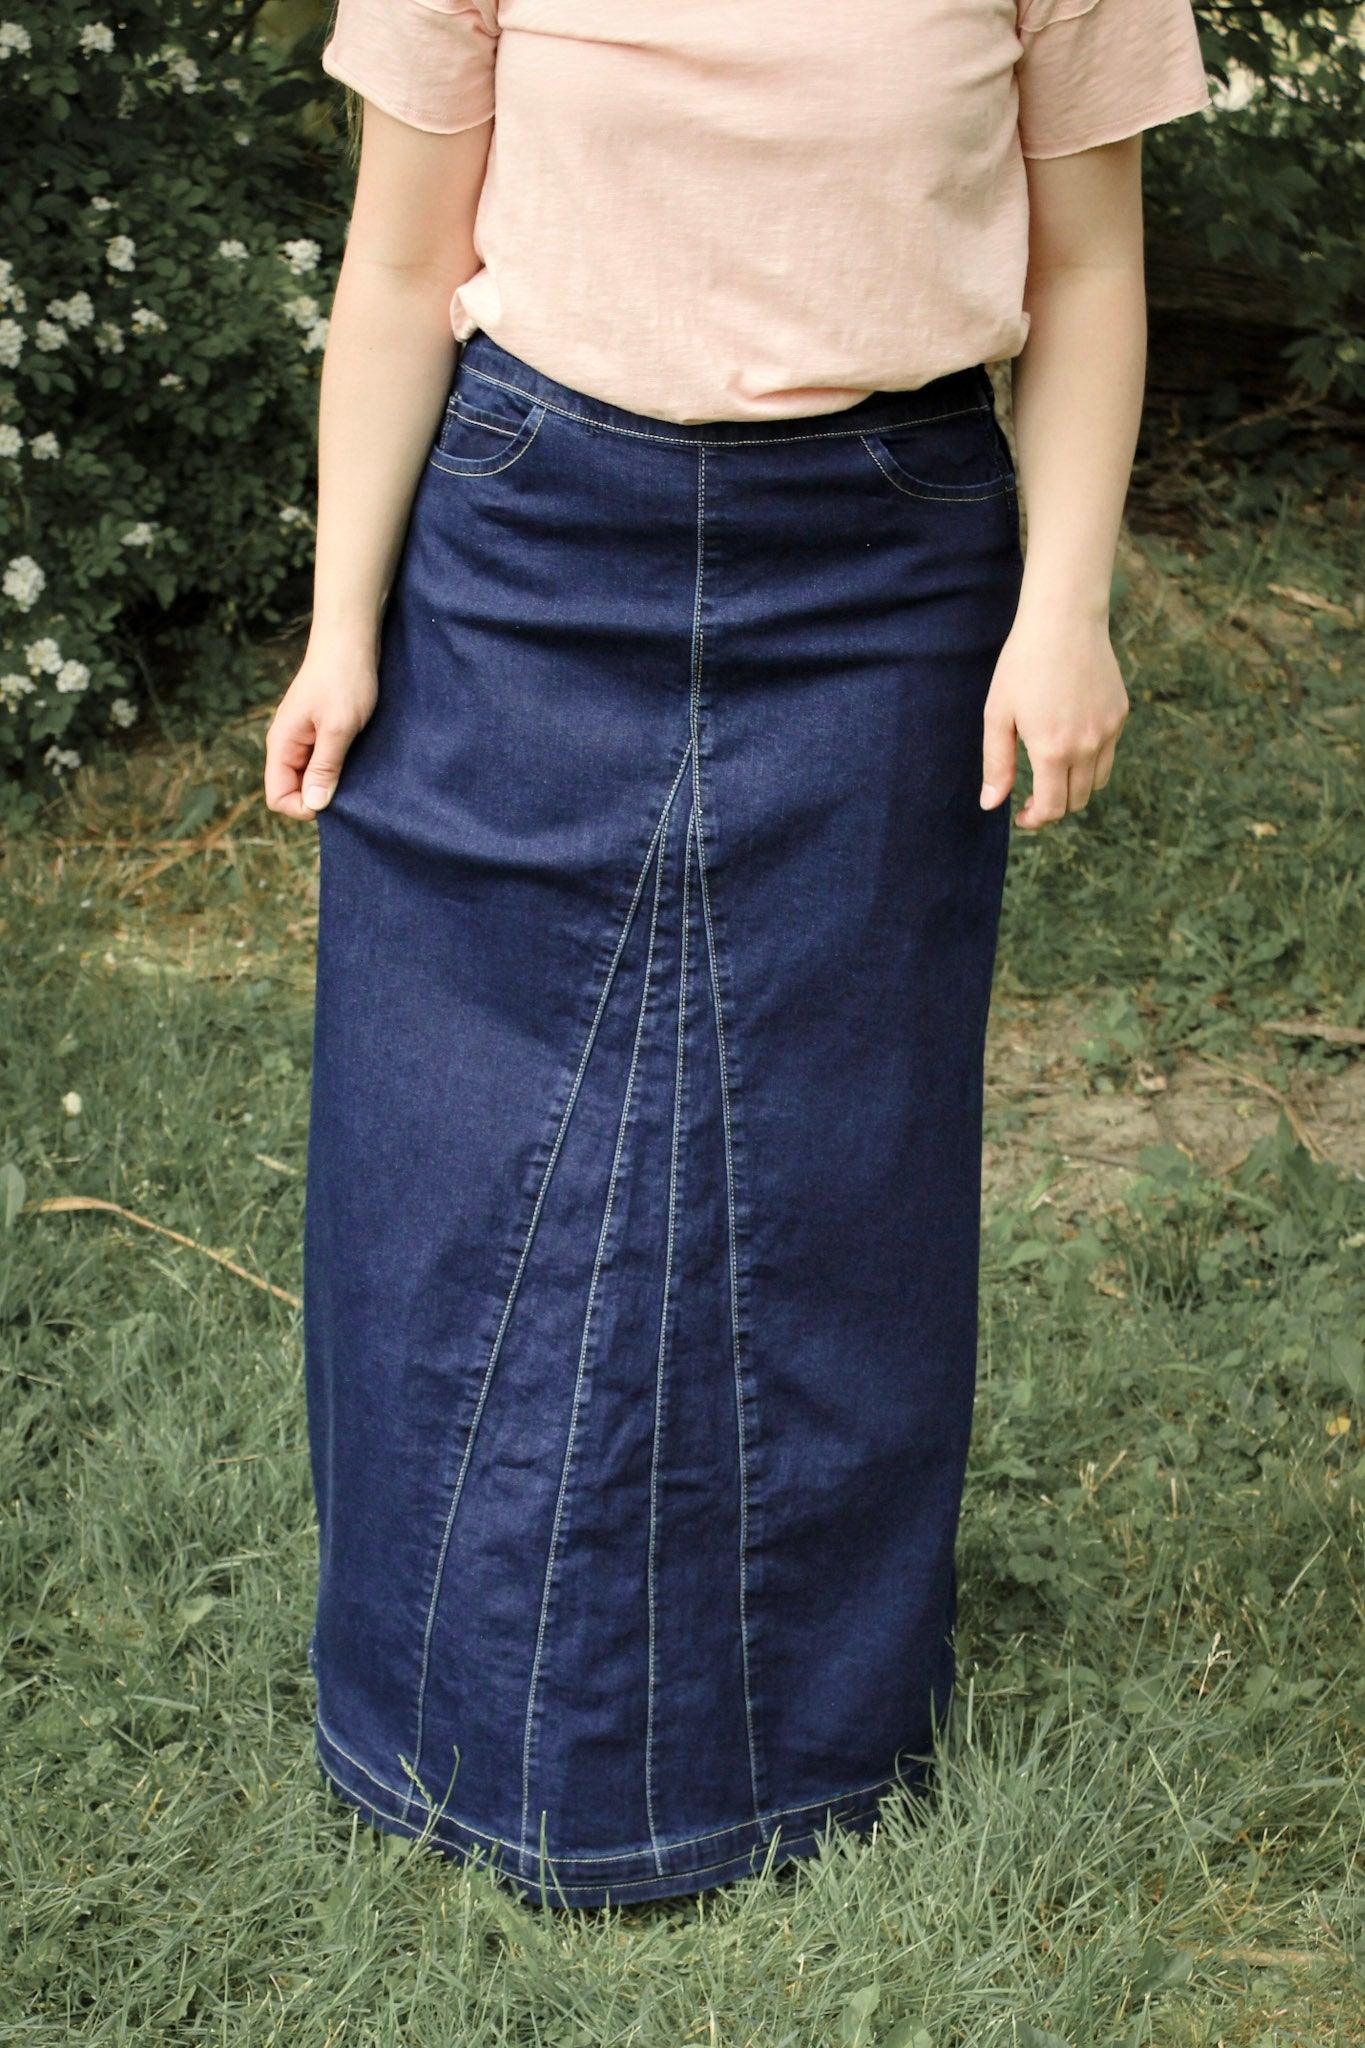 Elegant High Waist Denim Skirt For Women - A-line Slit Long Skirt